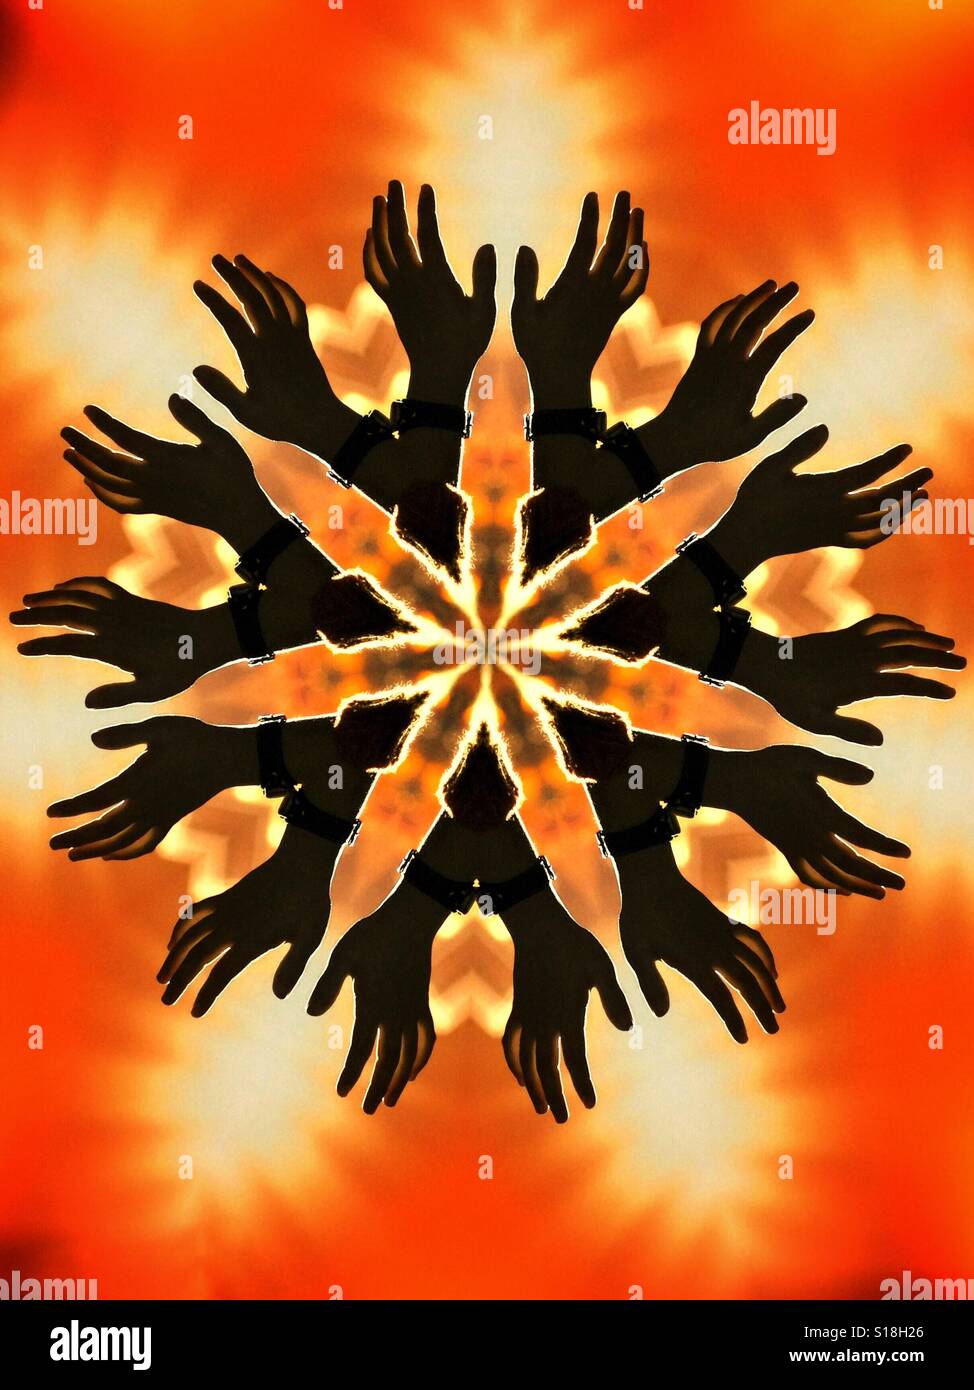 Un abstract immagine caleidoscopica dotate di stagliano le mani su di un fuoco di sfondo arancione Foto Stock